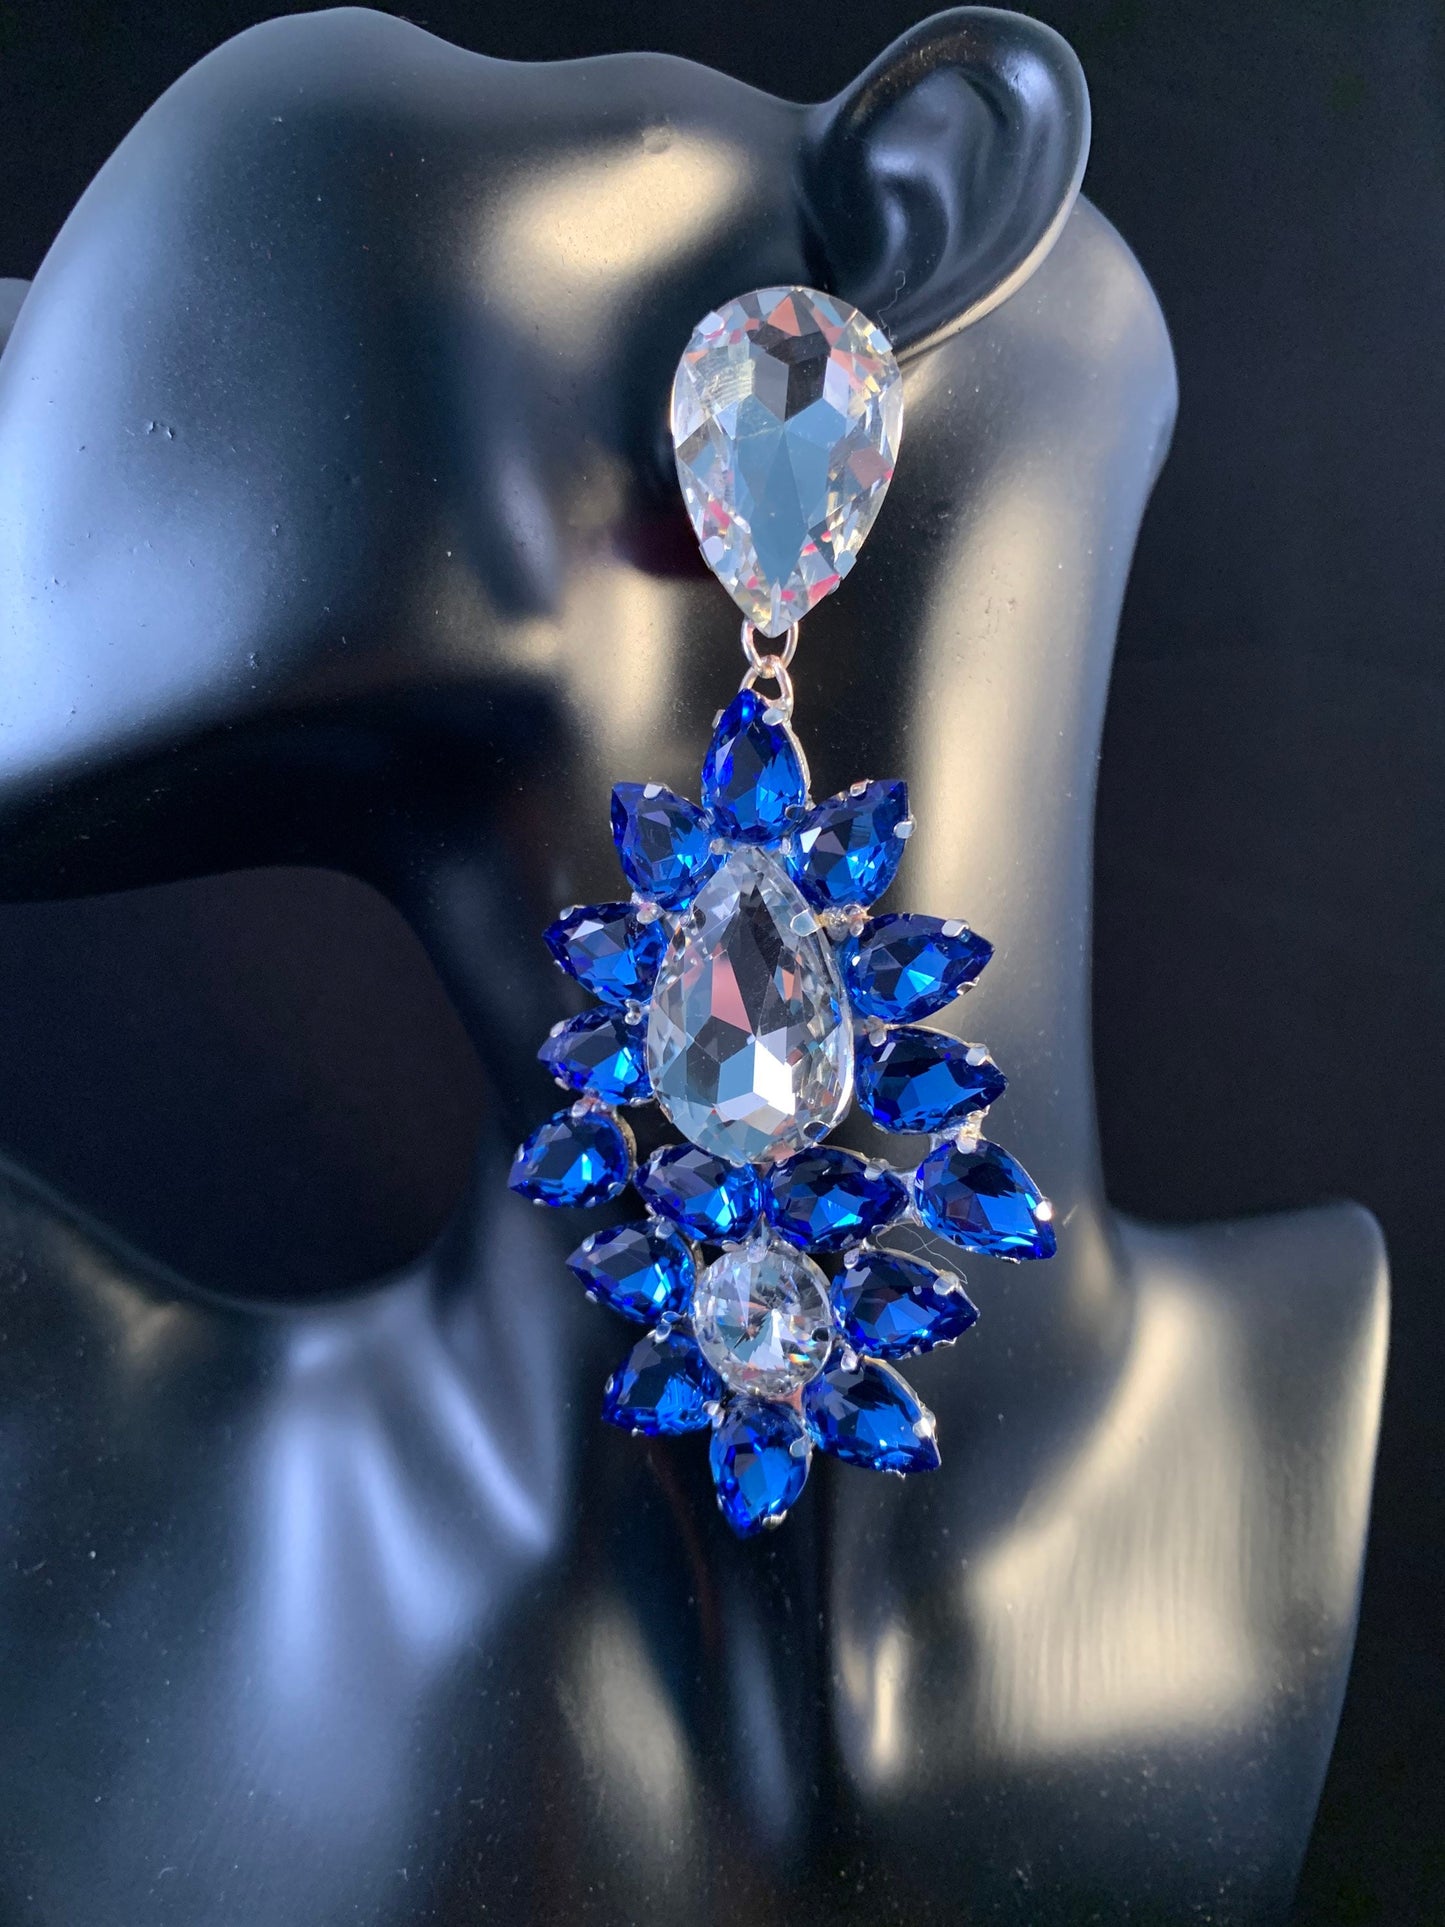 Large Earrings / Clip On or Pierced / Statement Earrings / Crystal Jewelry / Dress Earrings / Drag Queen